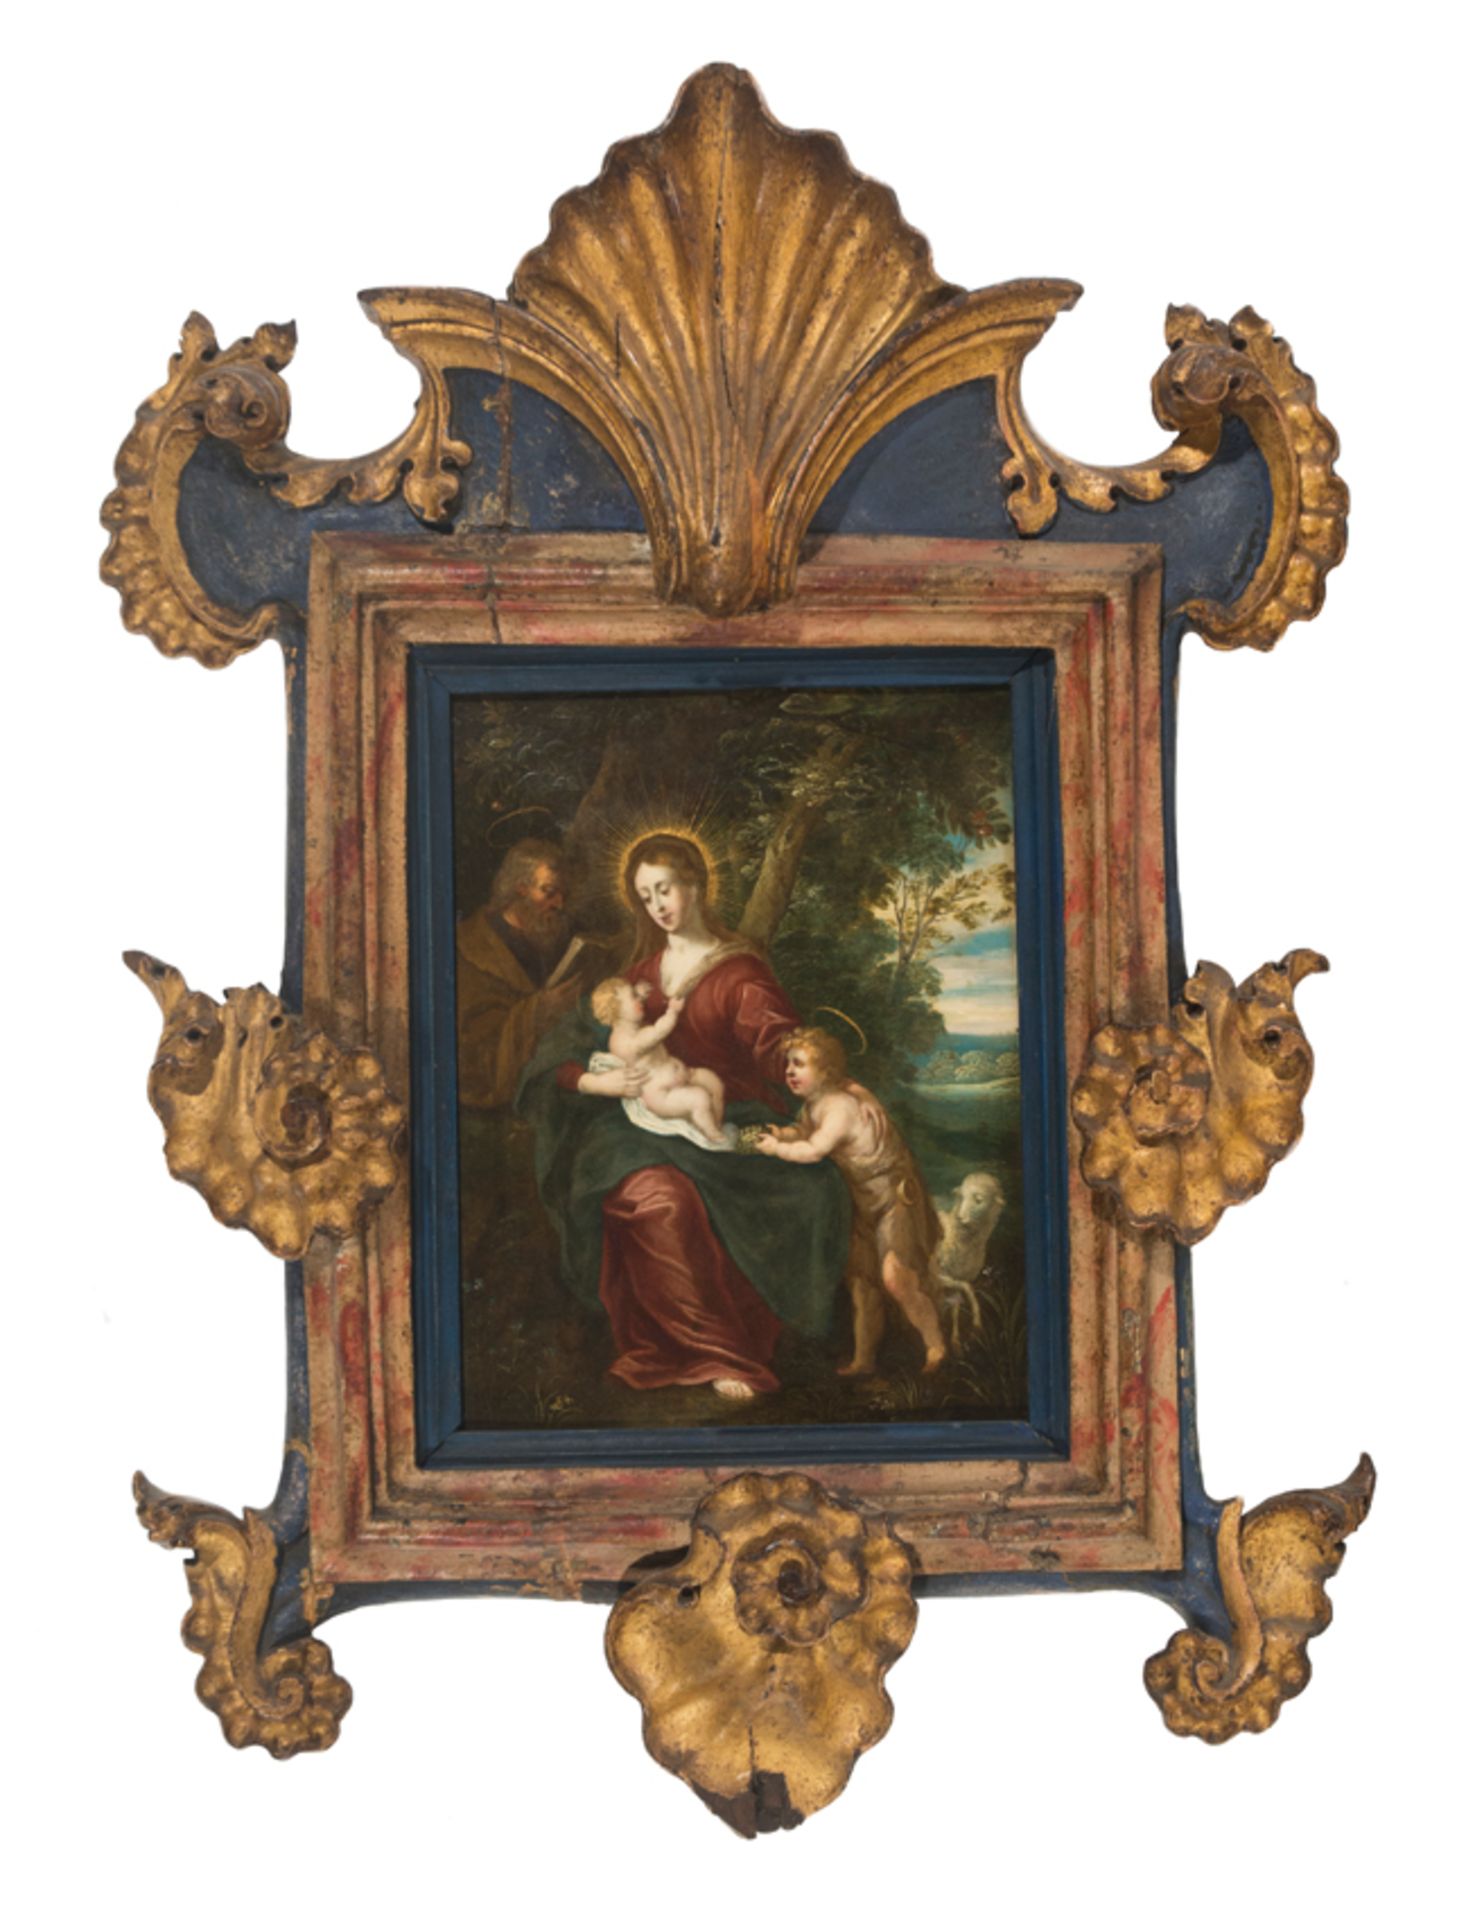 Attributed to Jan Brueghel the Younger (Antwerp, 1601 - 1678) and Pieter van Avont (Mechelen, 1600 -